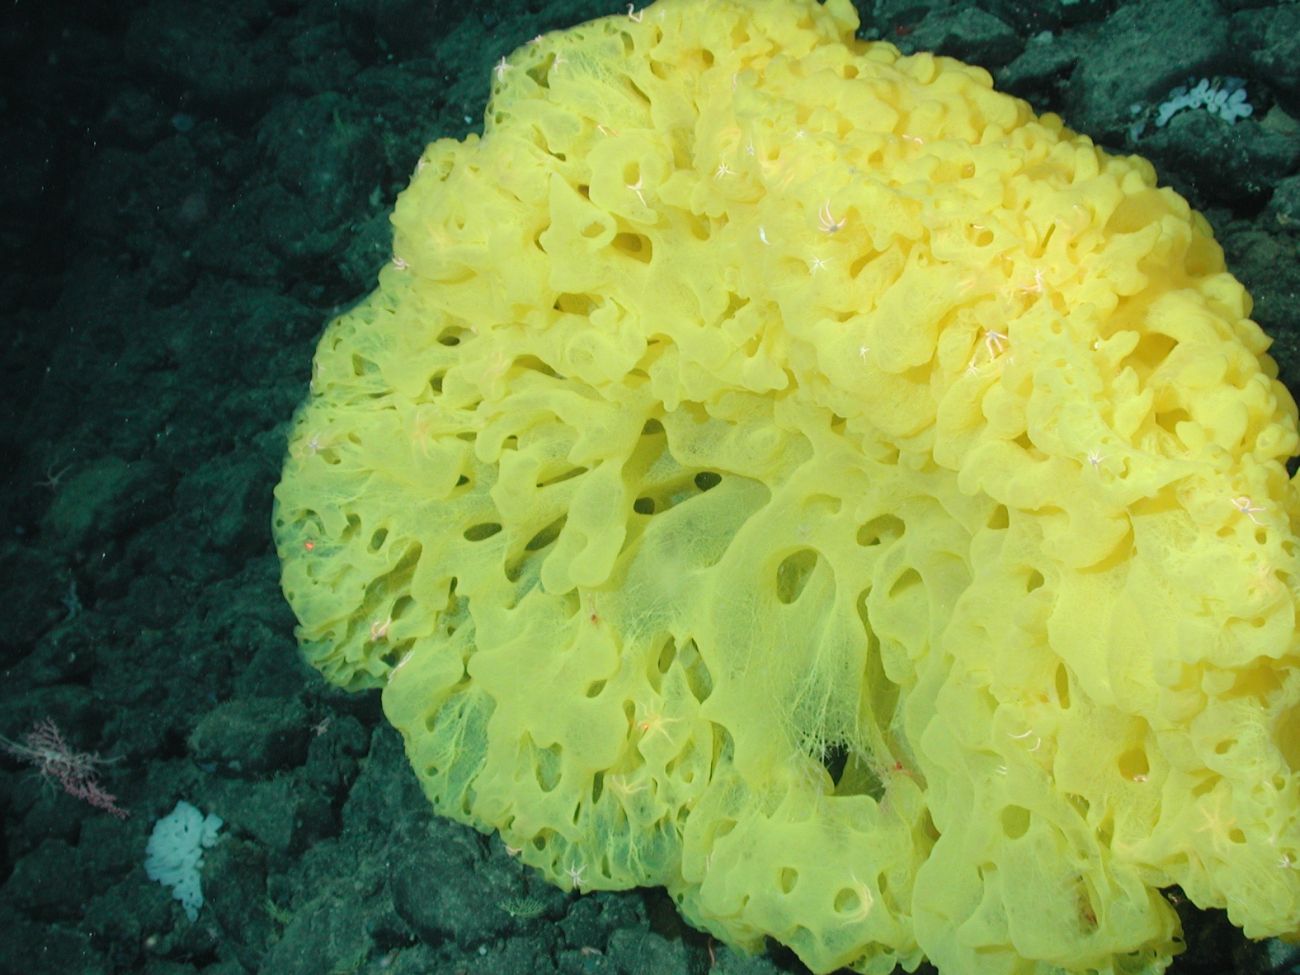 Yellow ruffle sponge